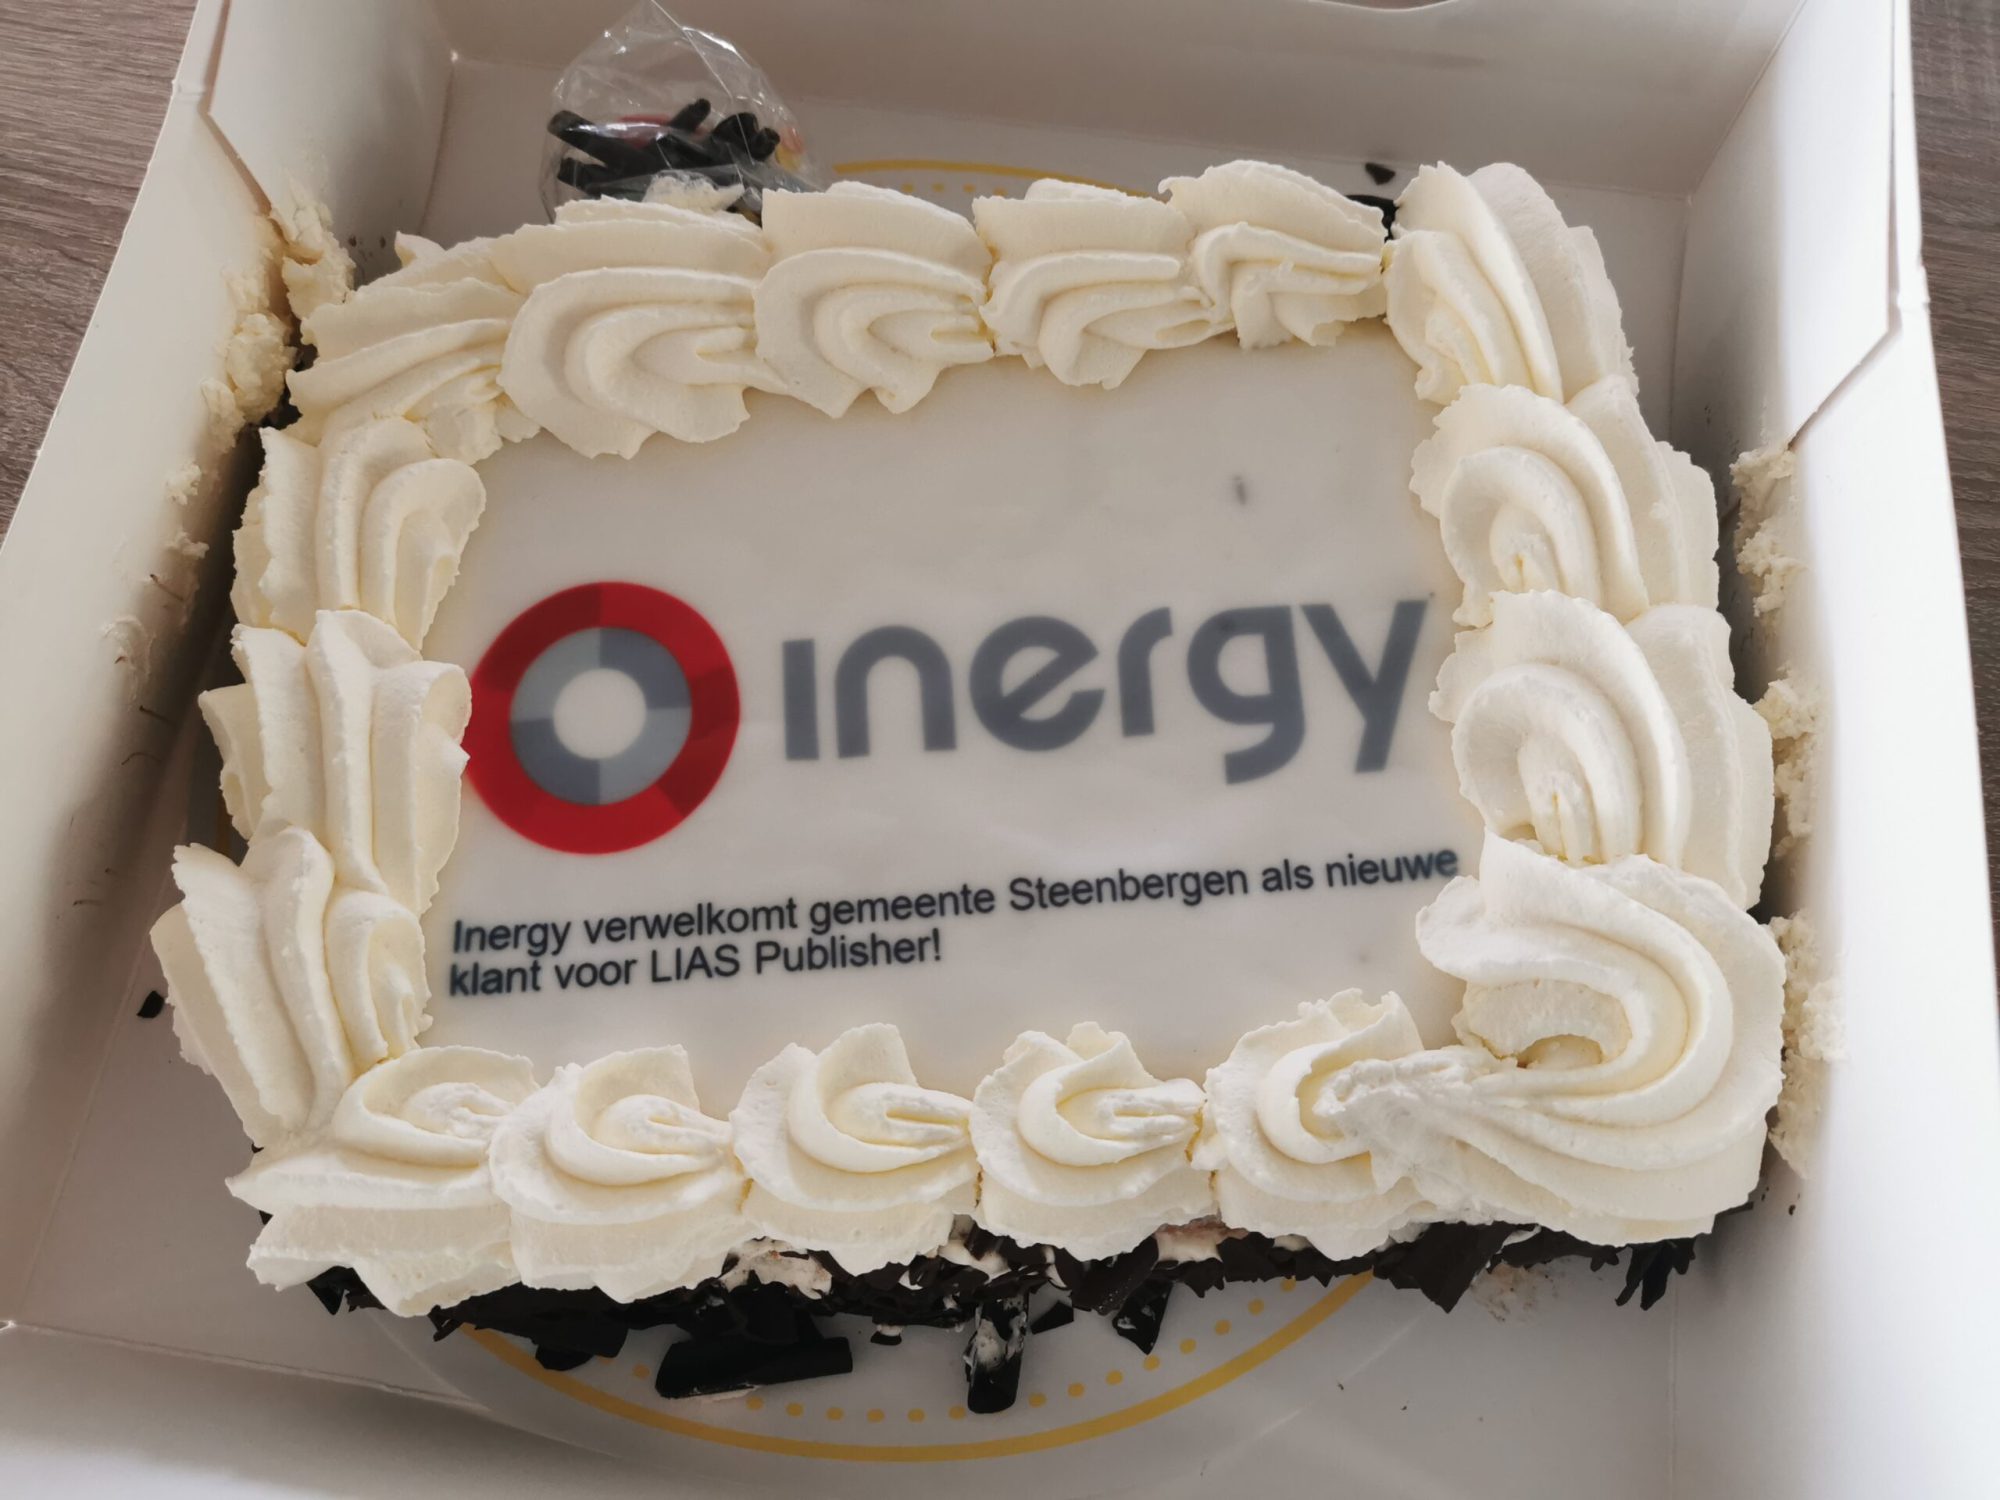 lekkere feestelijke taart met het Inergy logo erop